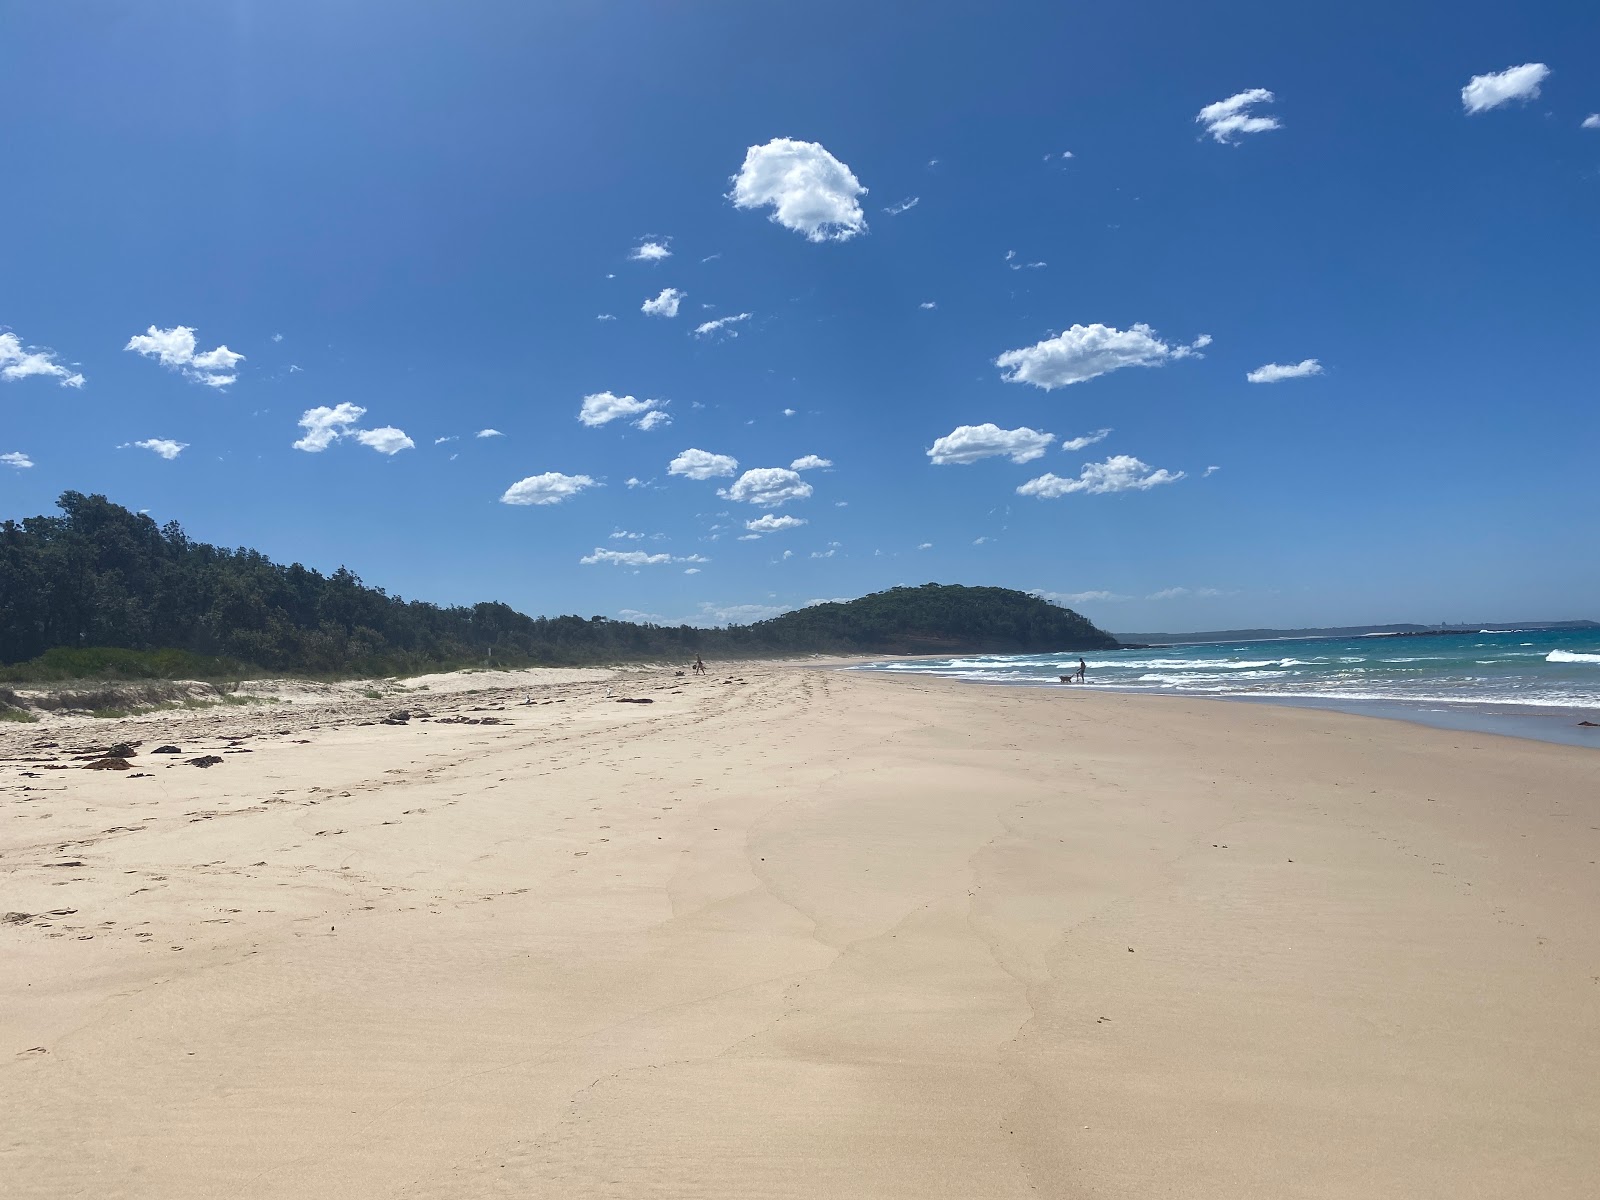 Foto de Narrawallee Beach ubicado en área natural